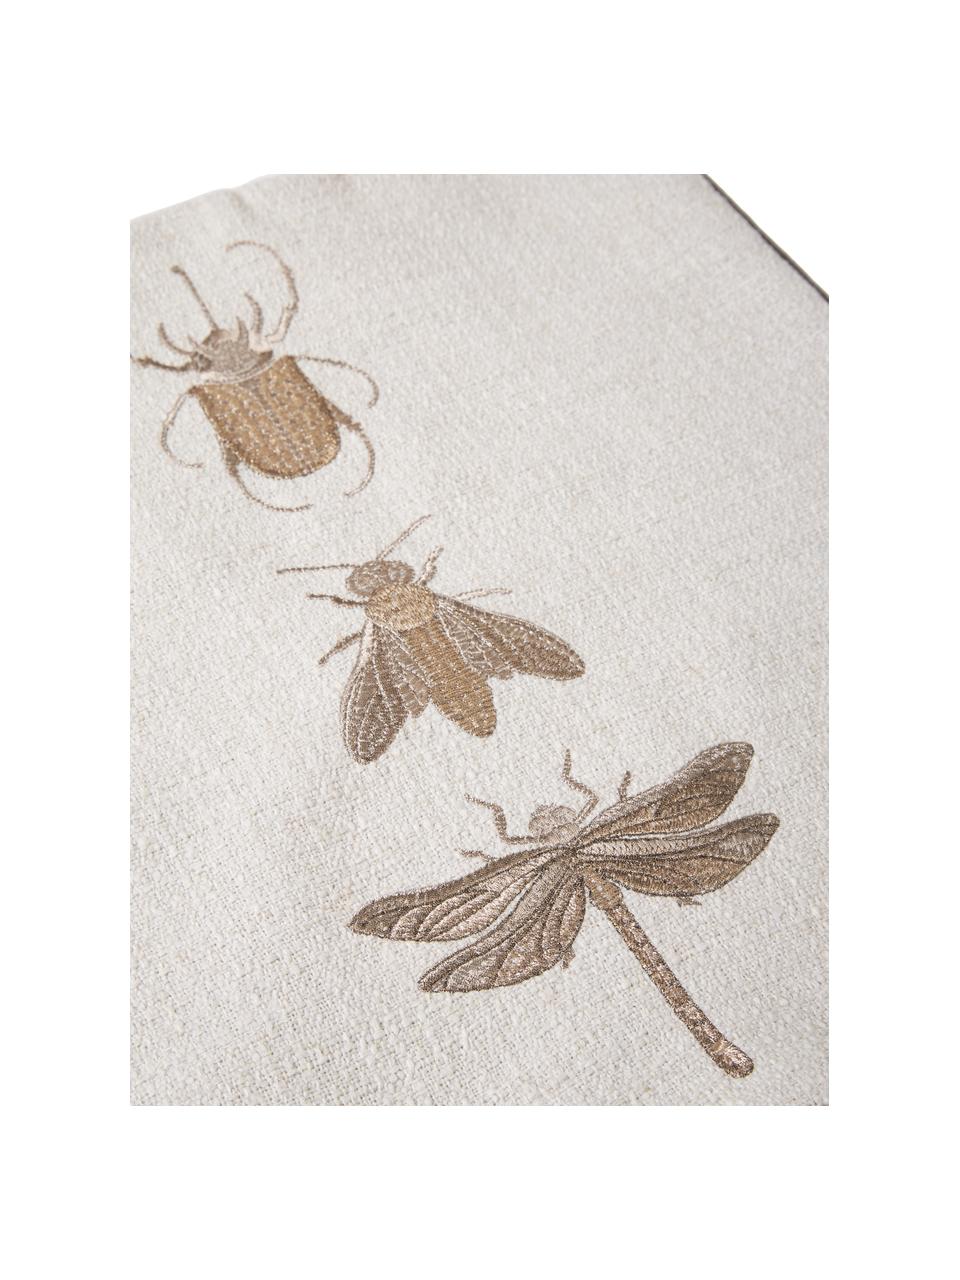 Geborduurde kussenhoes Tania met insectenmotief, 90% polyester, 10% linnen, Taupe, beige, B 45 x L 45 cm